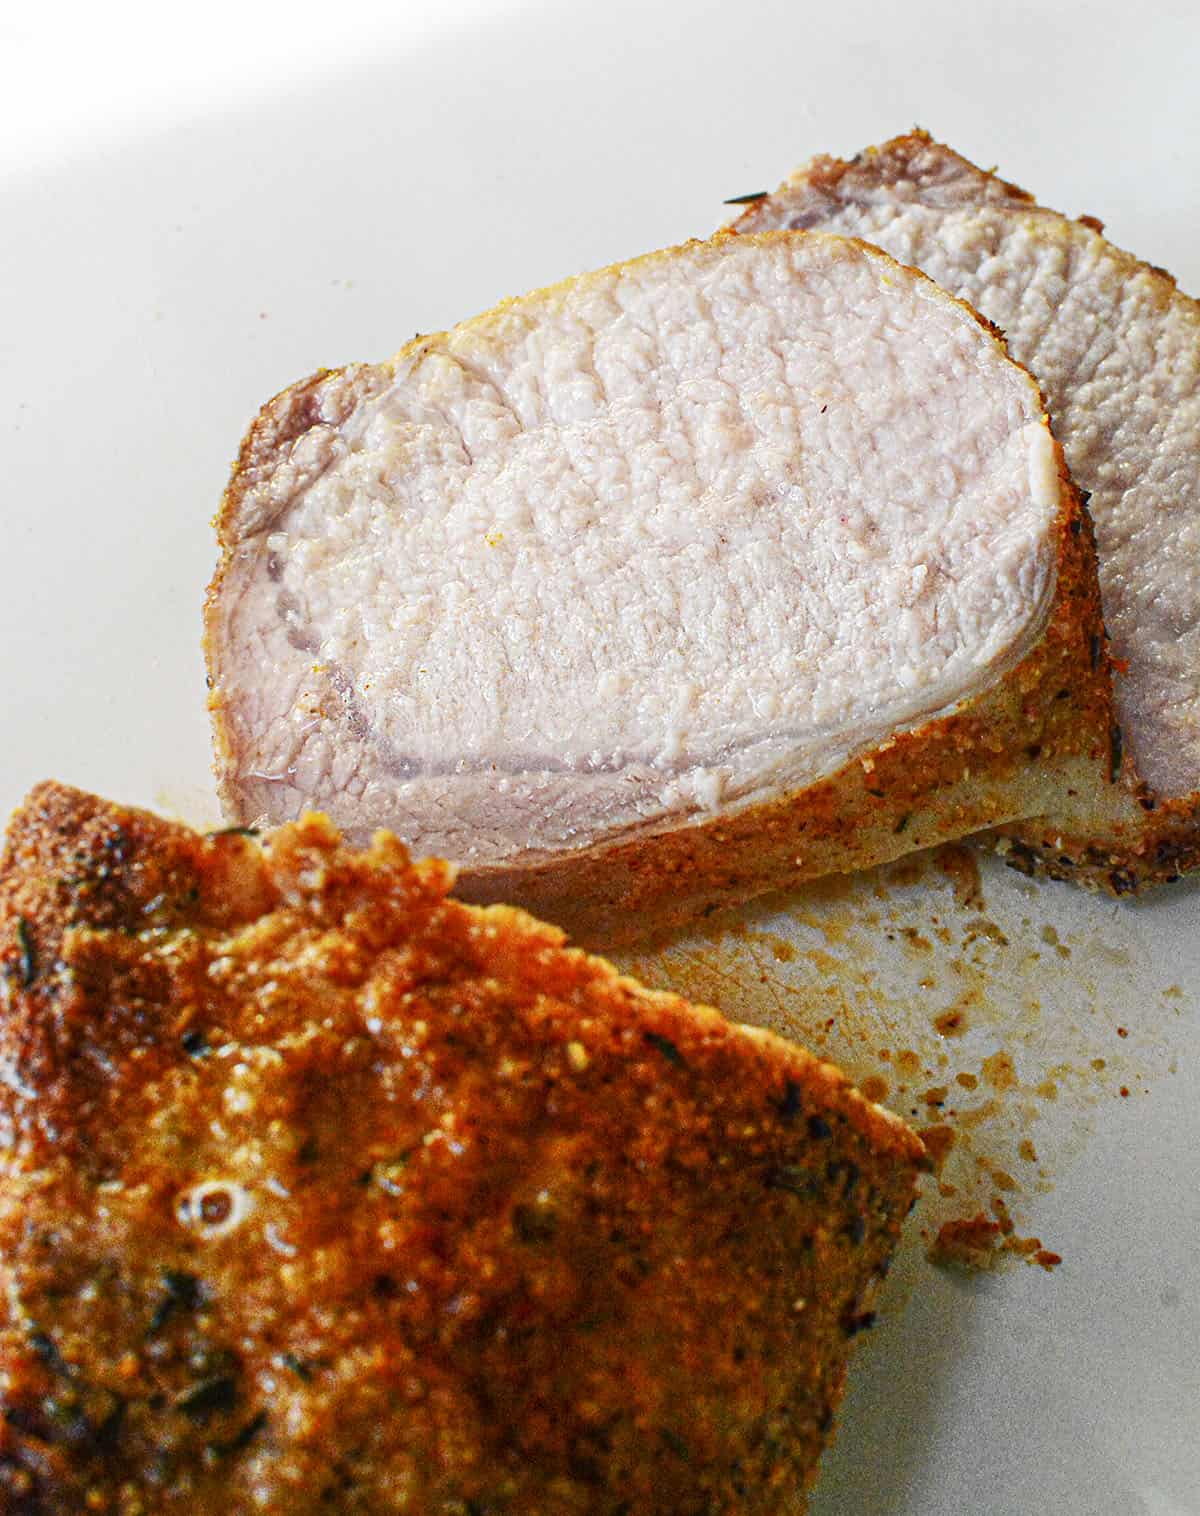 Deliciously juicy sliced roast pork.